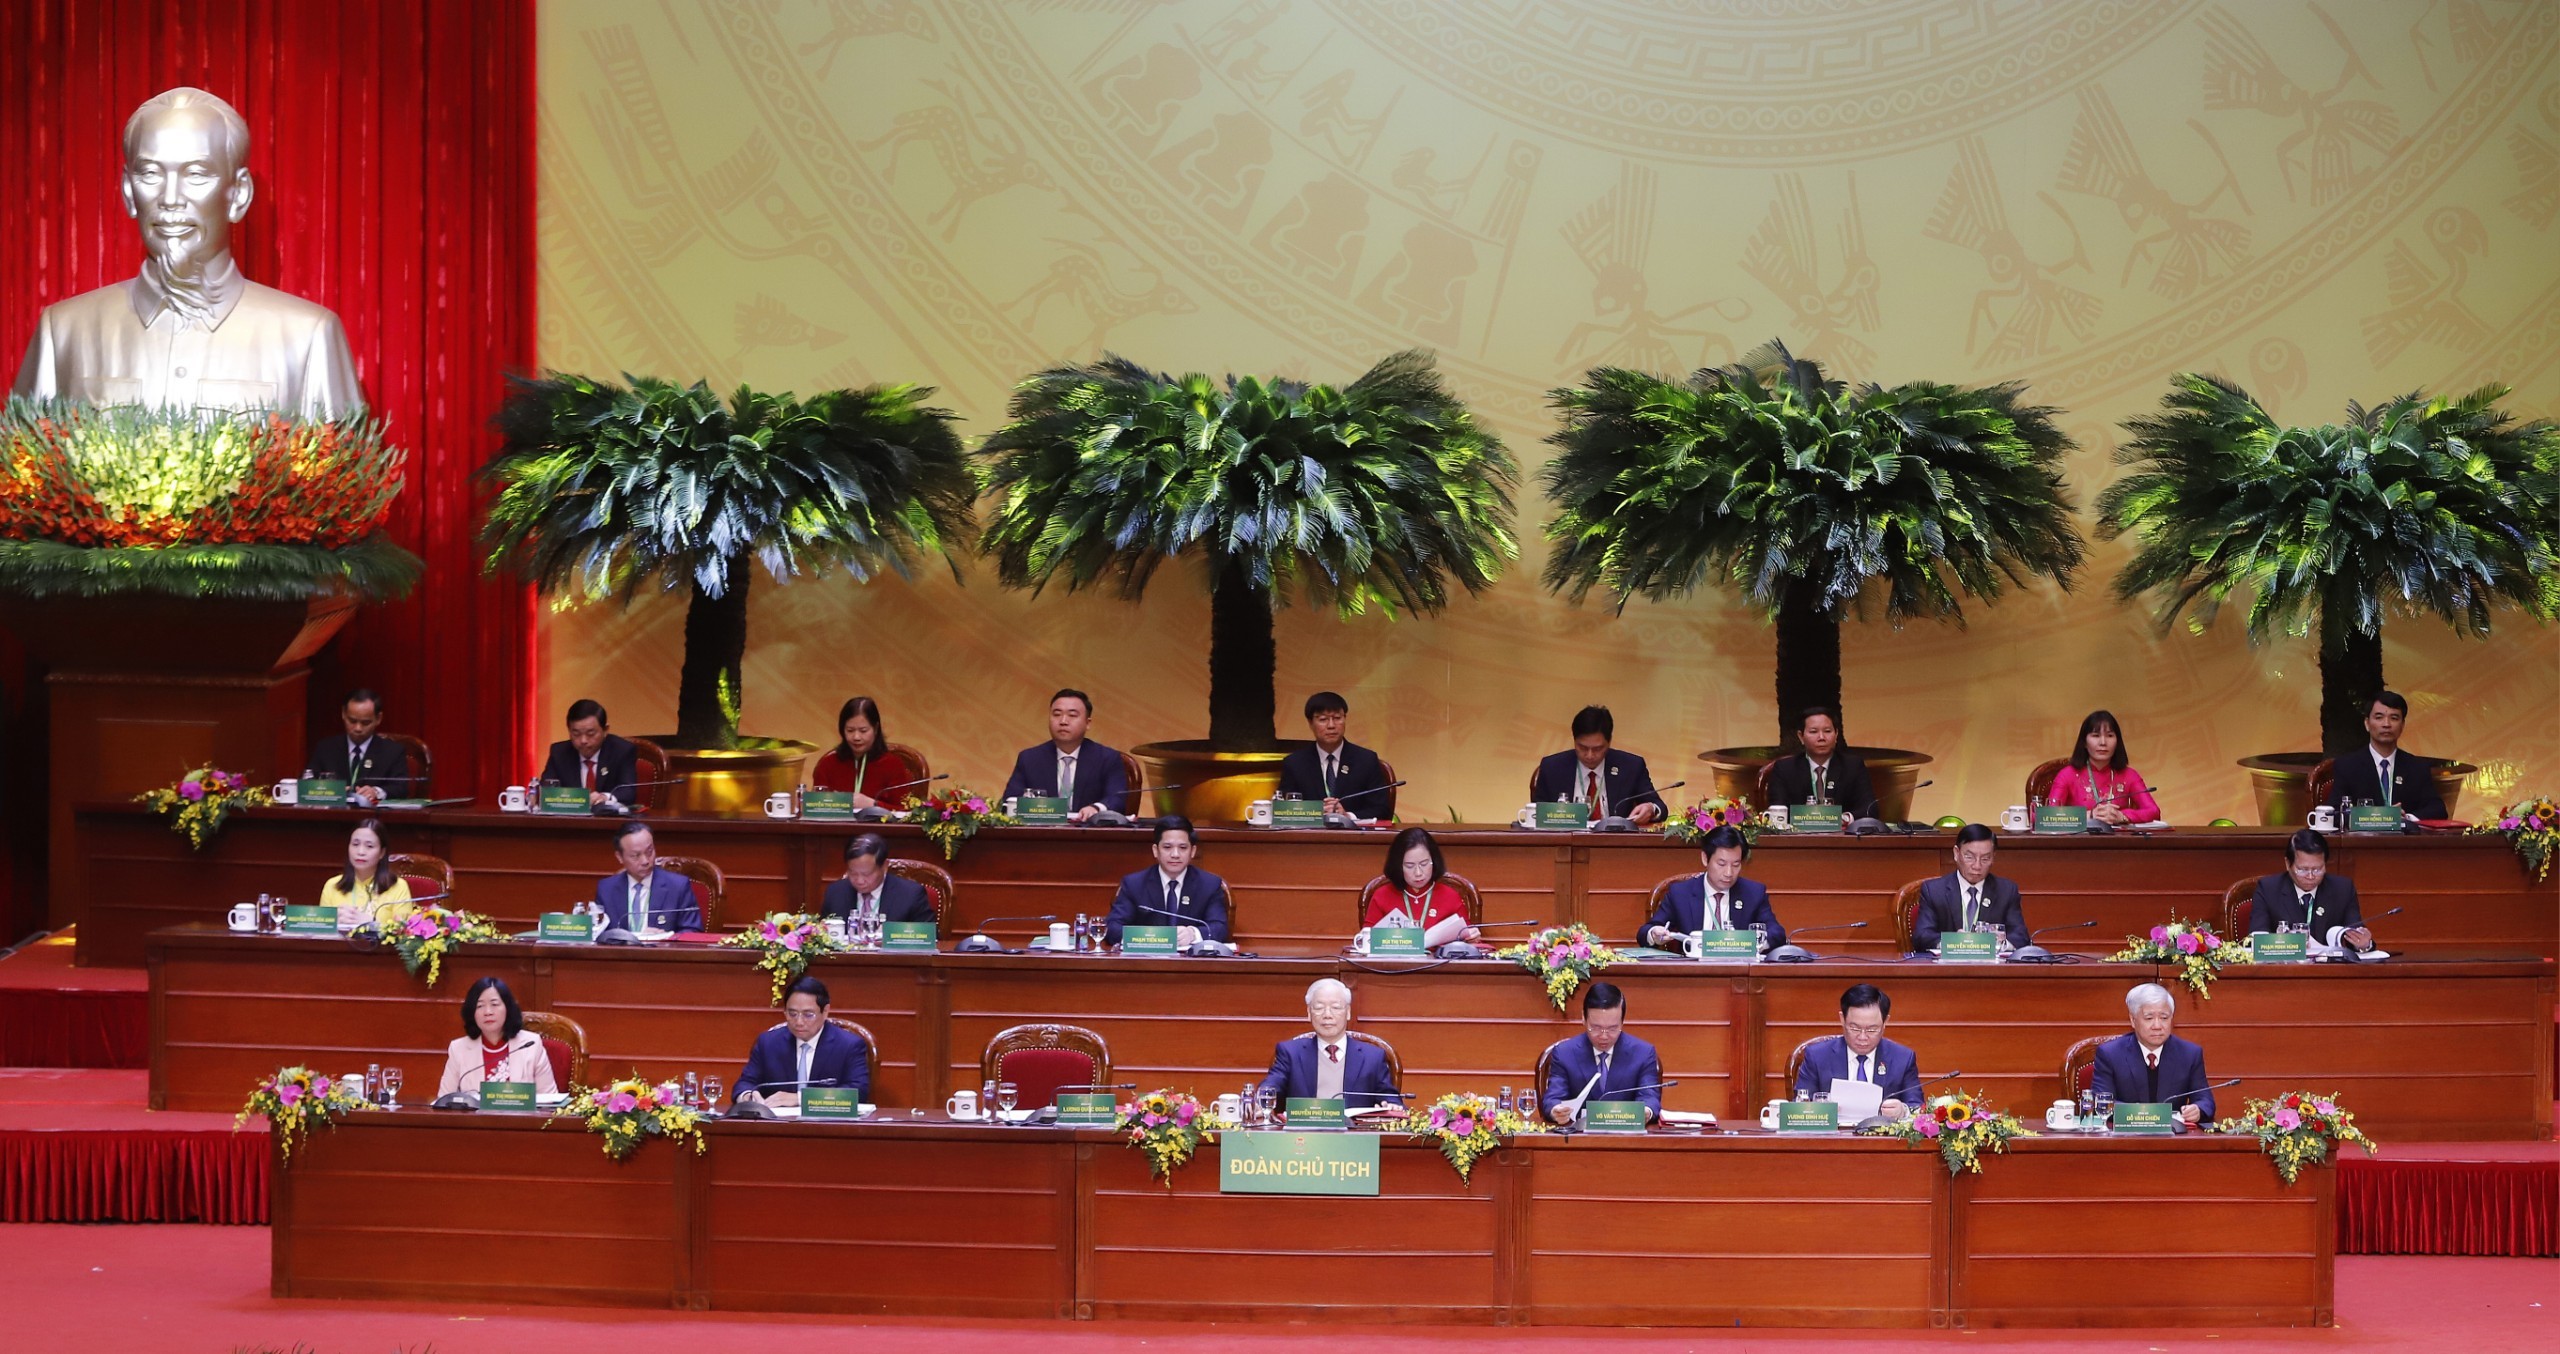 Tổng Bí thư Nguyễn Phú Trọng dự Đại hội đại biểu toàn quốc Hội nông dân Việt Nam lần thứ VIII